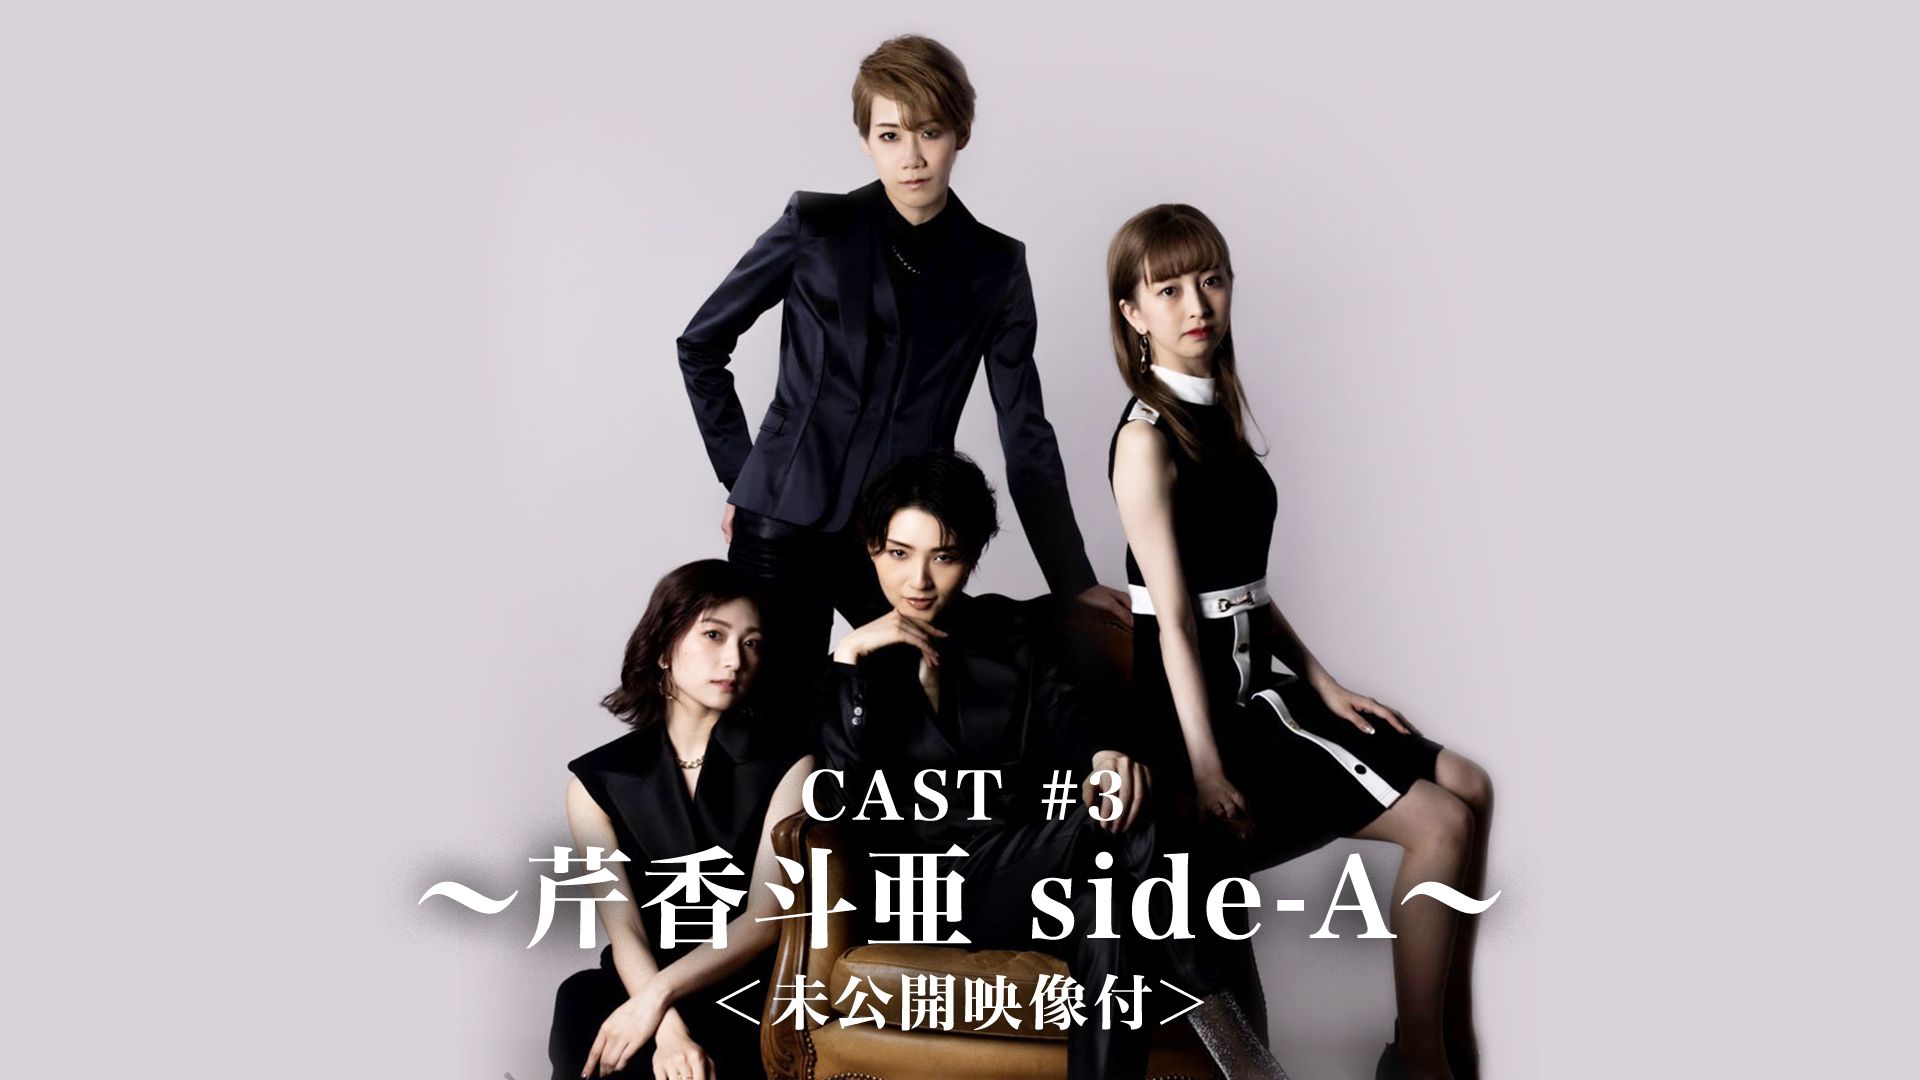 CAST #3〜芹香斗亜 side-A〜<未公開映像付>